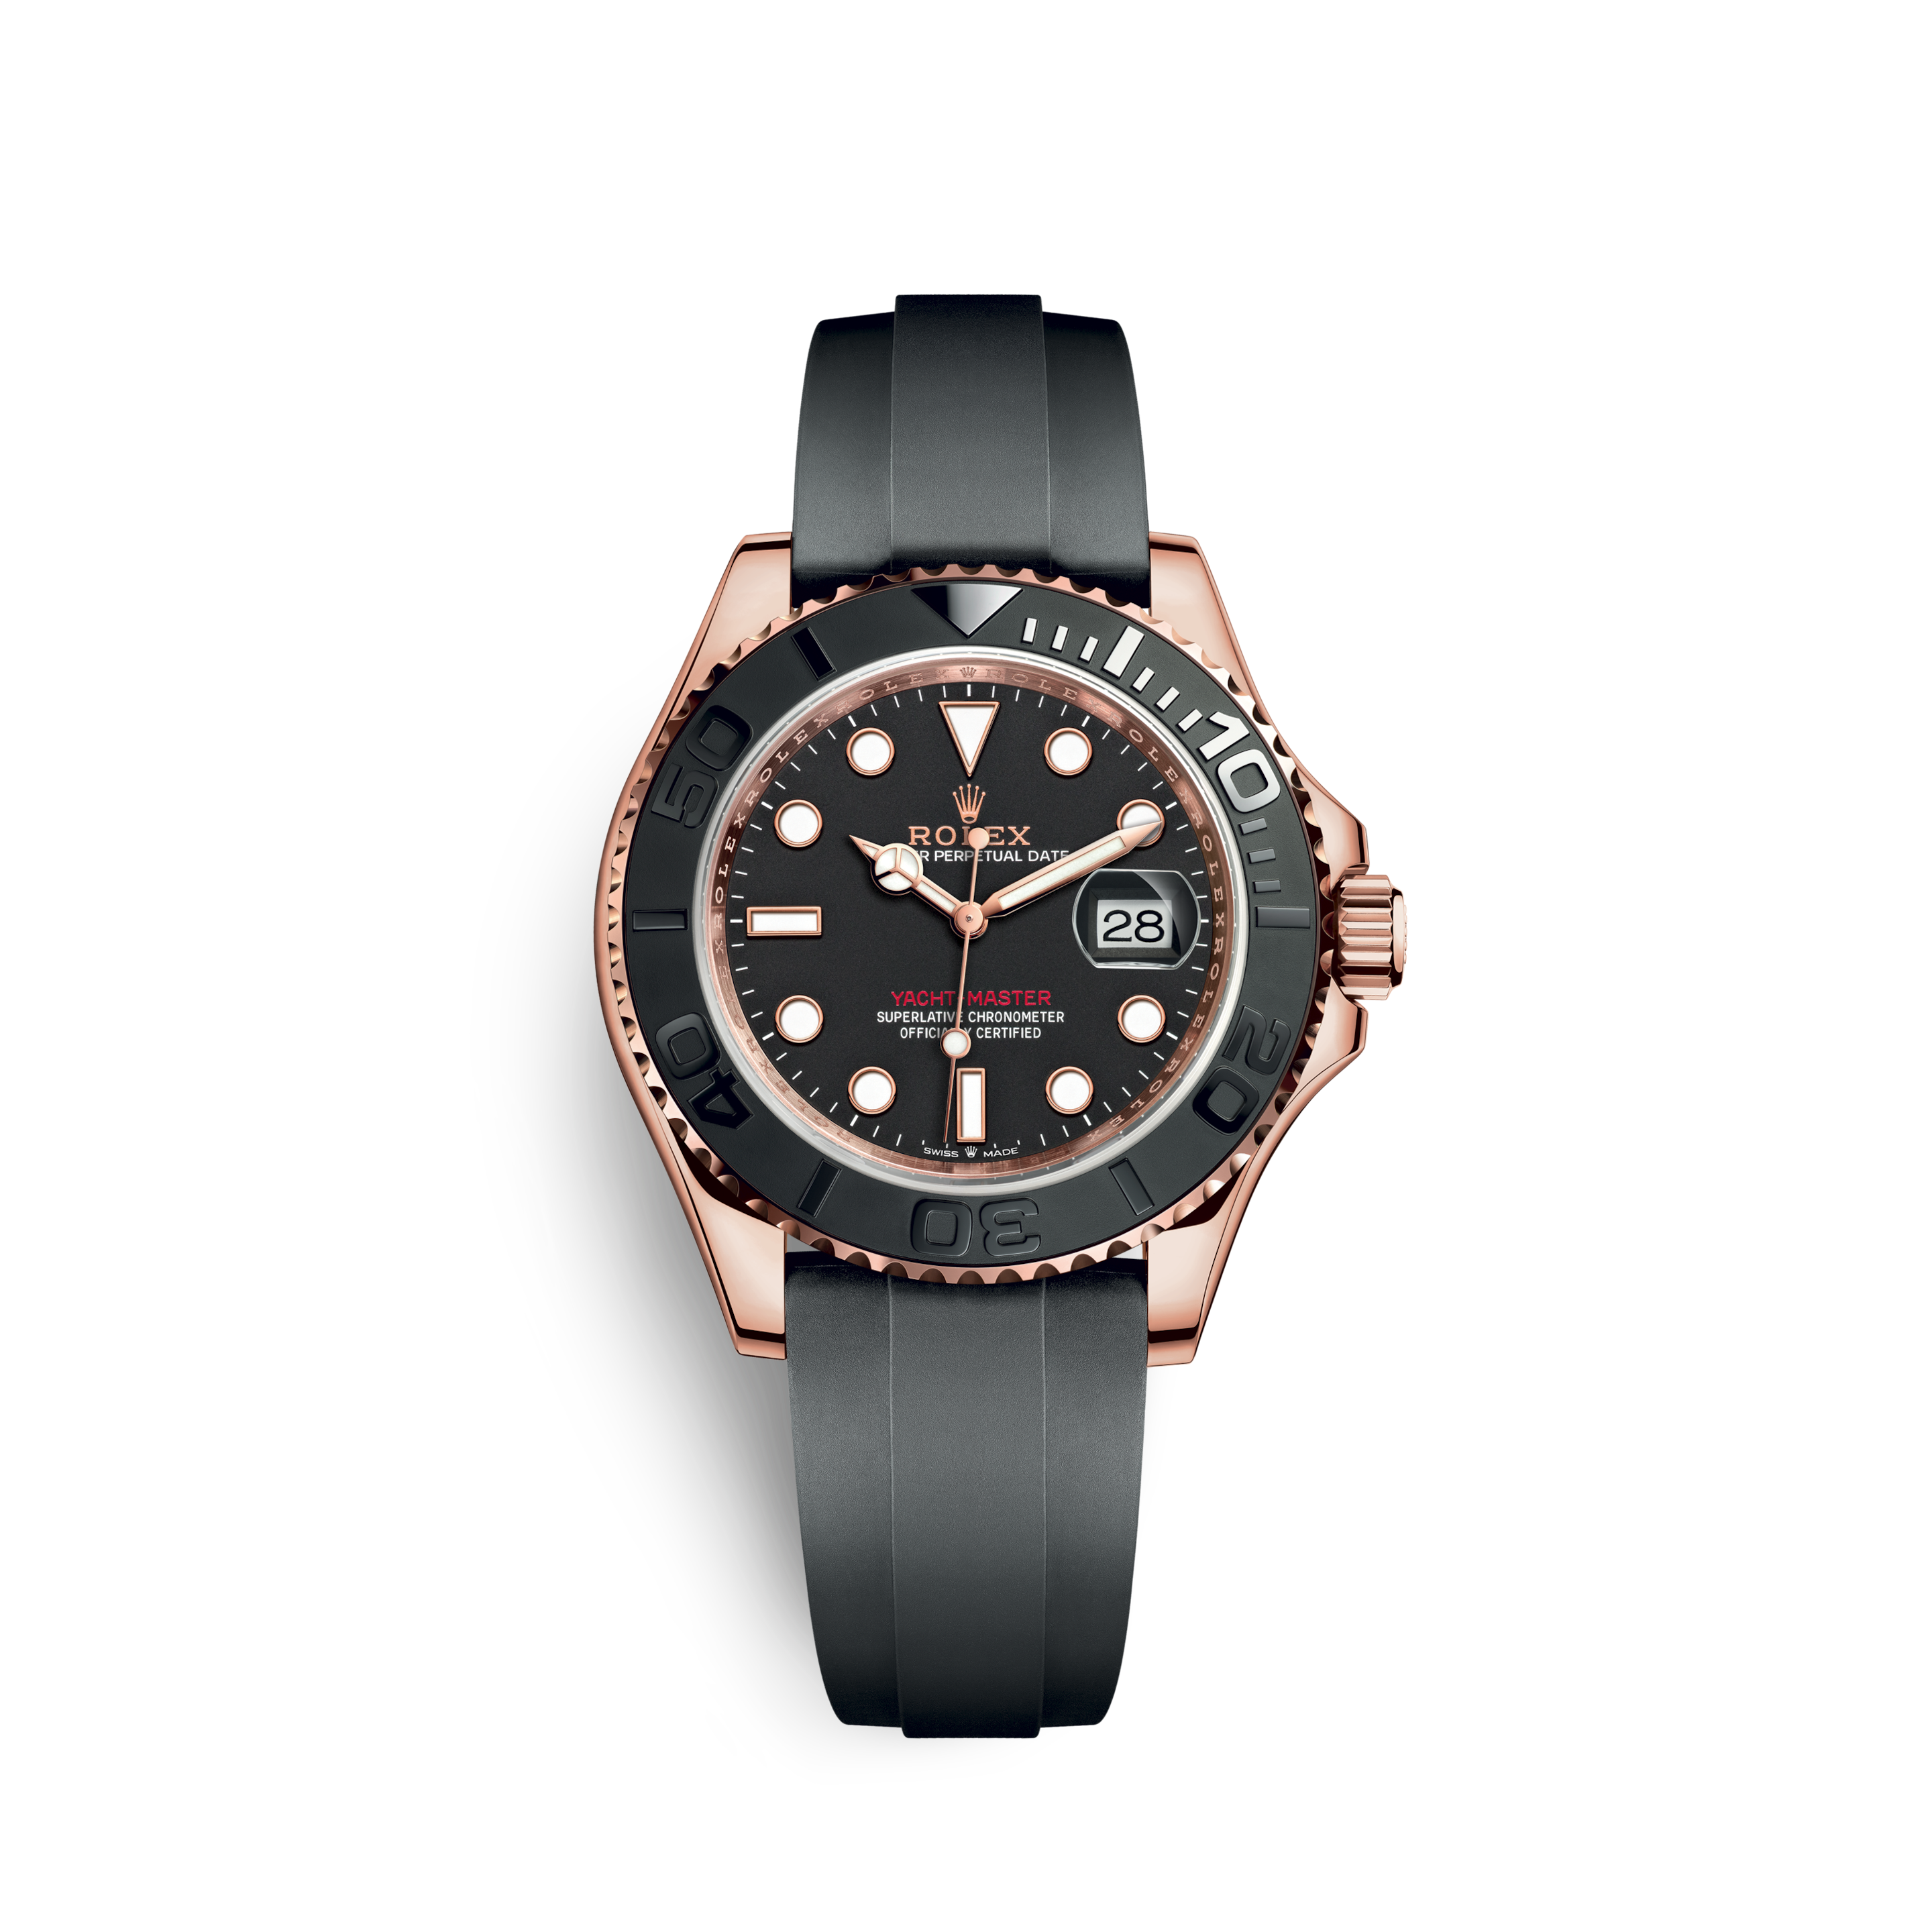 Rolex Yacht-Master - 揚帆遠航的腕錶